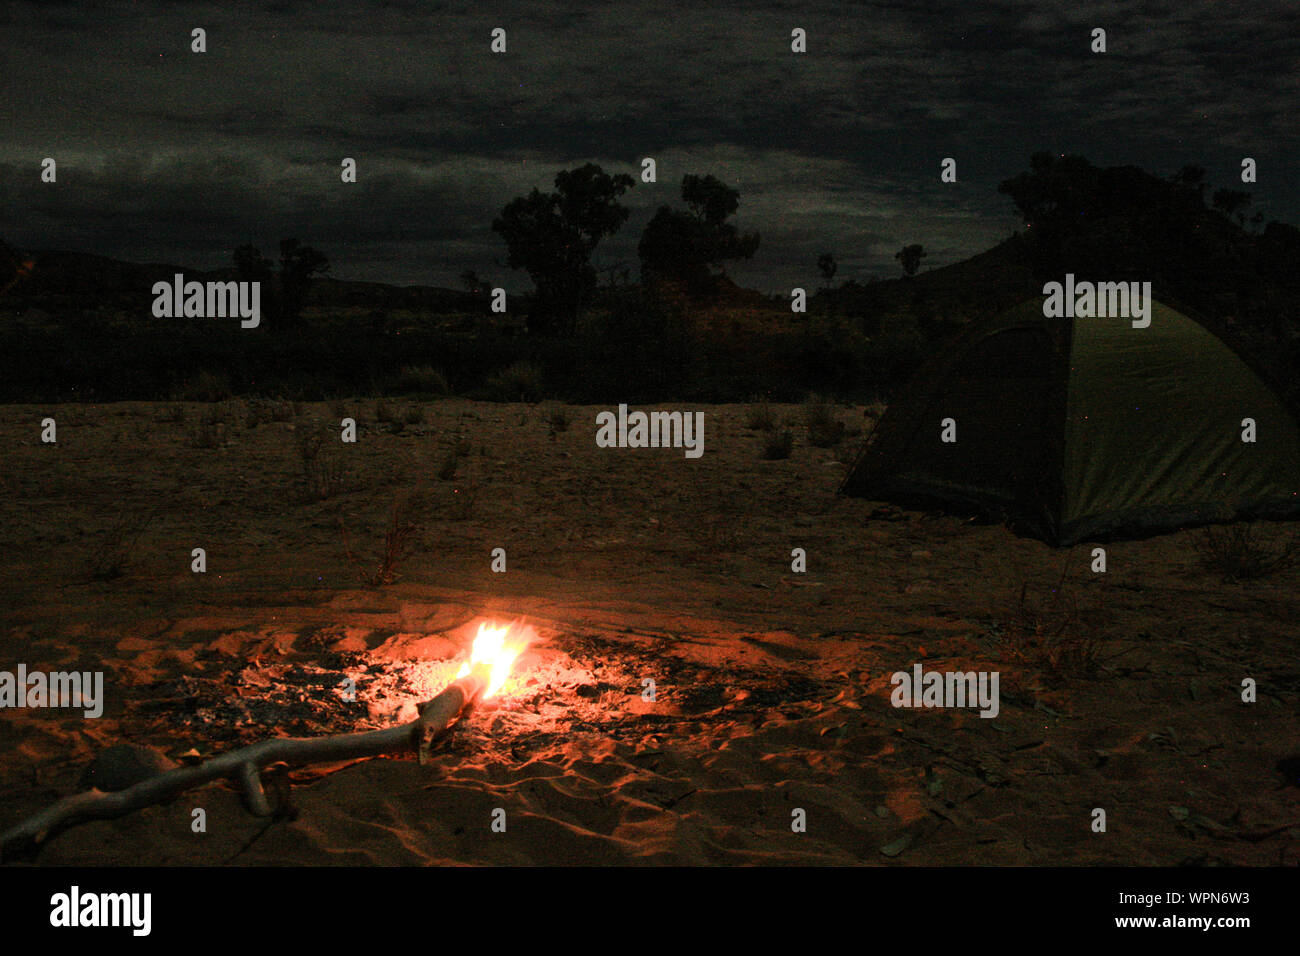 Camping mit einem schönen Lagerfeuer neben Alice Springs, Northern Territory, Australien, Nachts erschossen Stockfoto